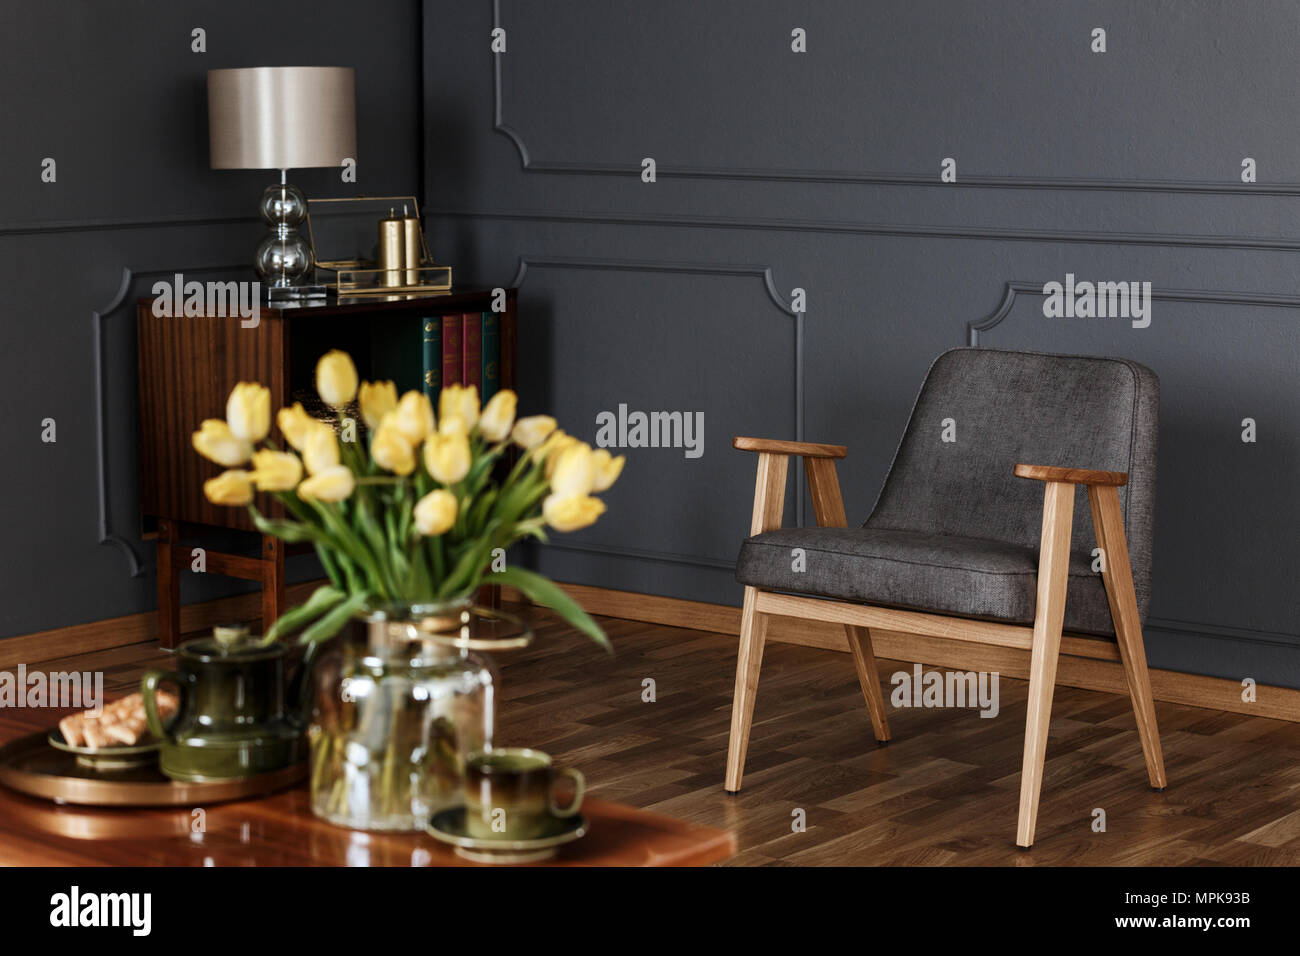 Photo réelle d'un fauteuil gris rétro et armoire en bois contre un mur sombre de la vie intérieur. Tulipes jaune floue au premier plan. Banque D'Images